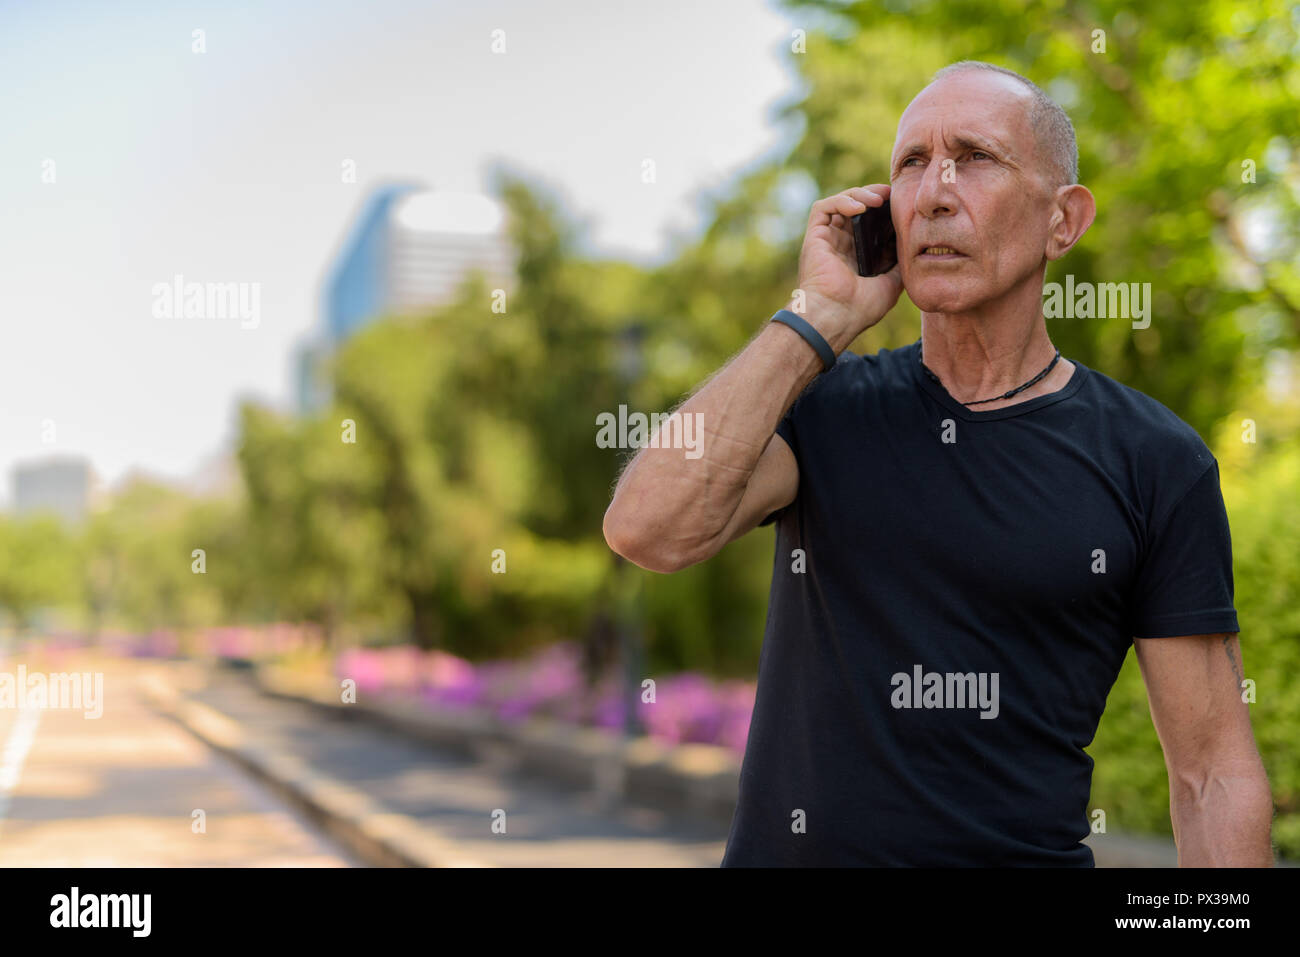 Senior homme chauve touristique pensée tout en parlant sur un téléphone mobile Banque D'Images